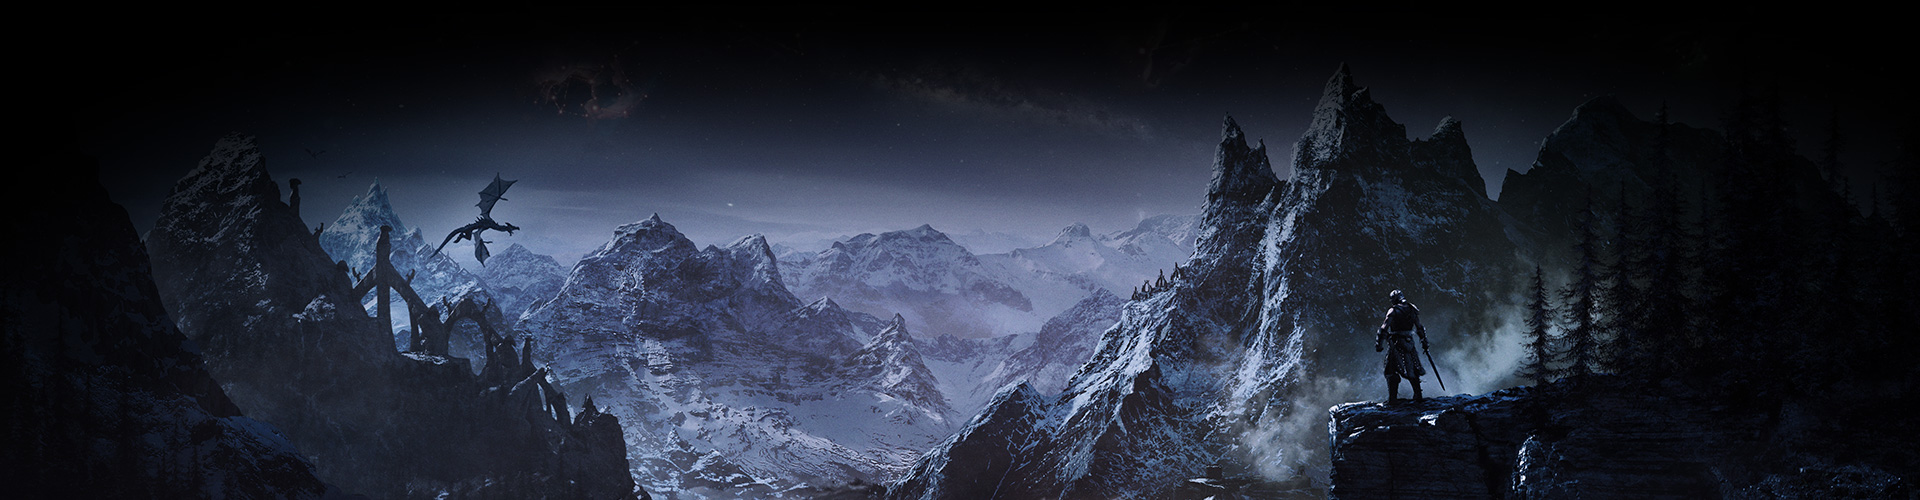 Eine Figur, die auf ein Tal mit verschneiten Bergen blickt, über dem ein Drache schwebt